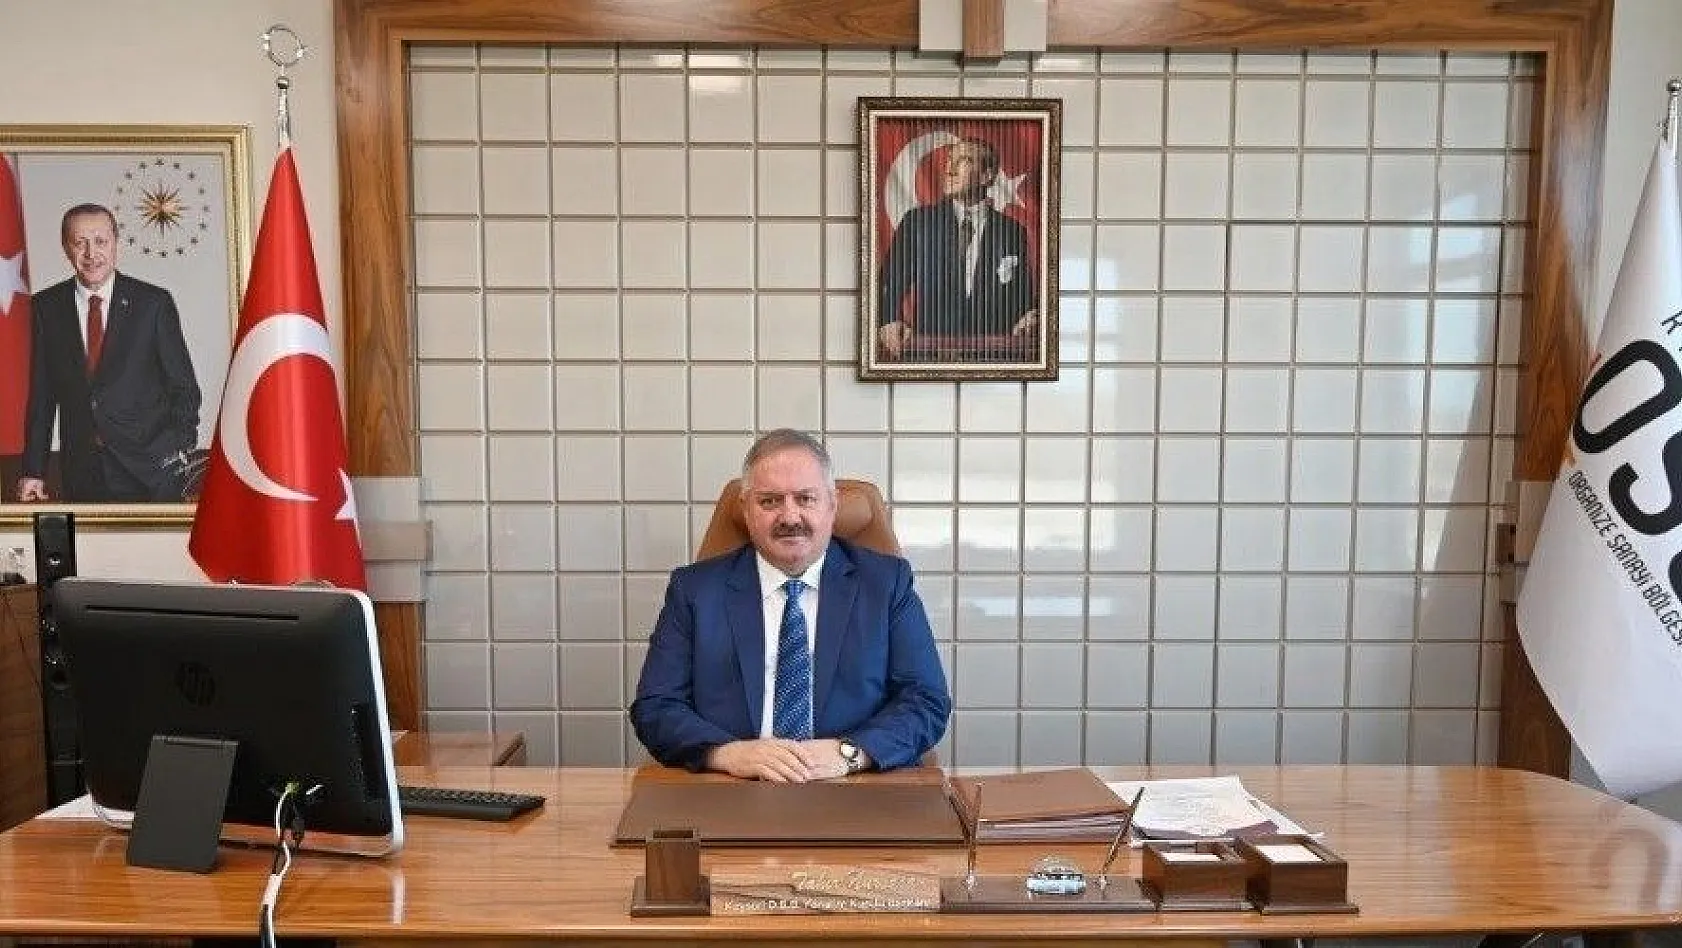 Kayseri OSB Yönetim Kurulu Başkanı Tahir Nursaçan: 'Engellilik tüm toplumu ilgilendiren bir konudur'
